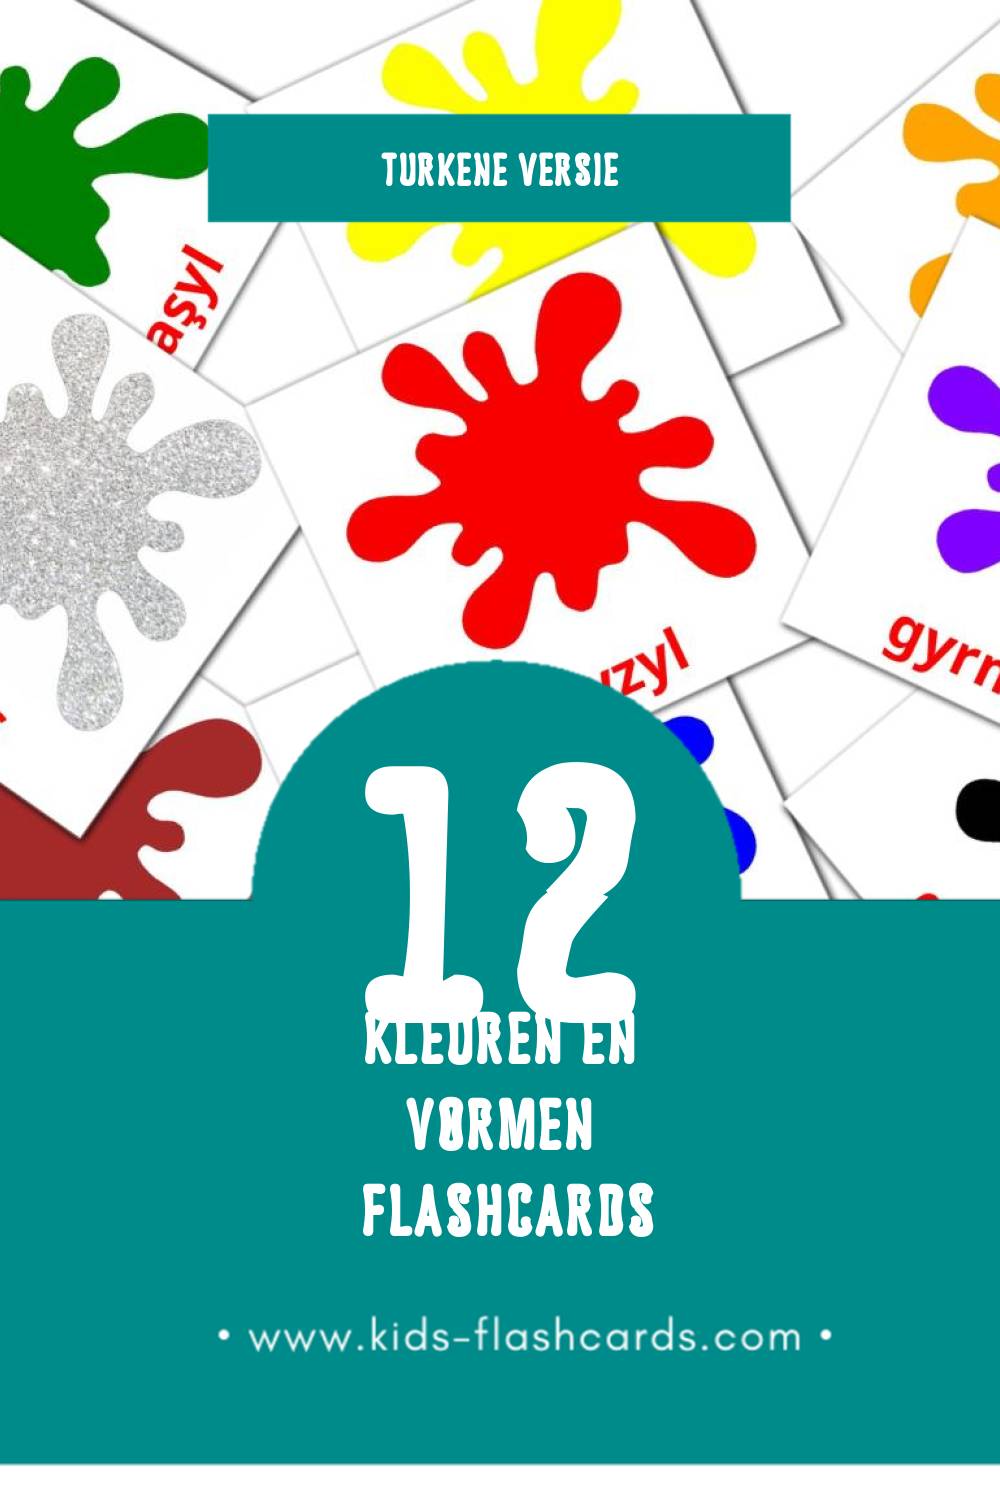 Visuele Reňkler we şekiller Flashcards voor Kleuters (12 kaarten in het Turken)